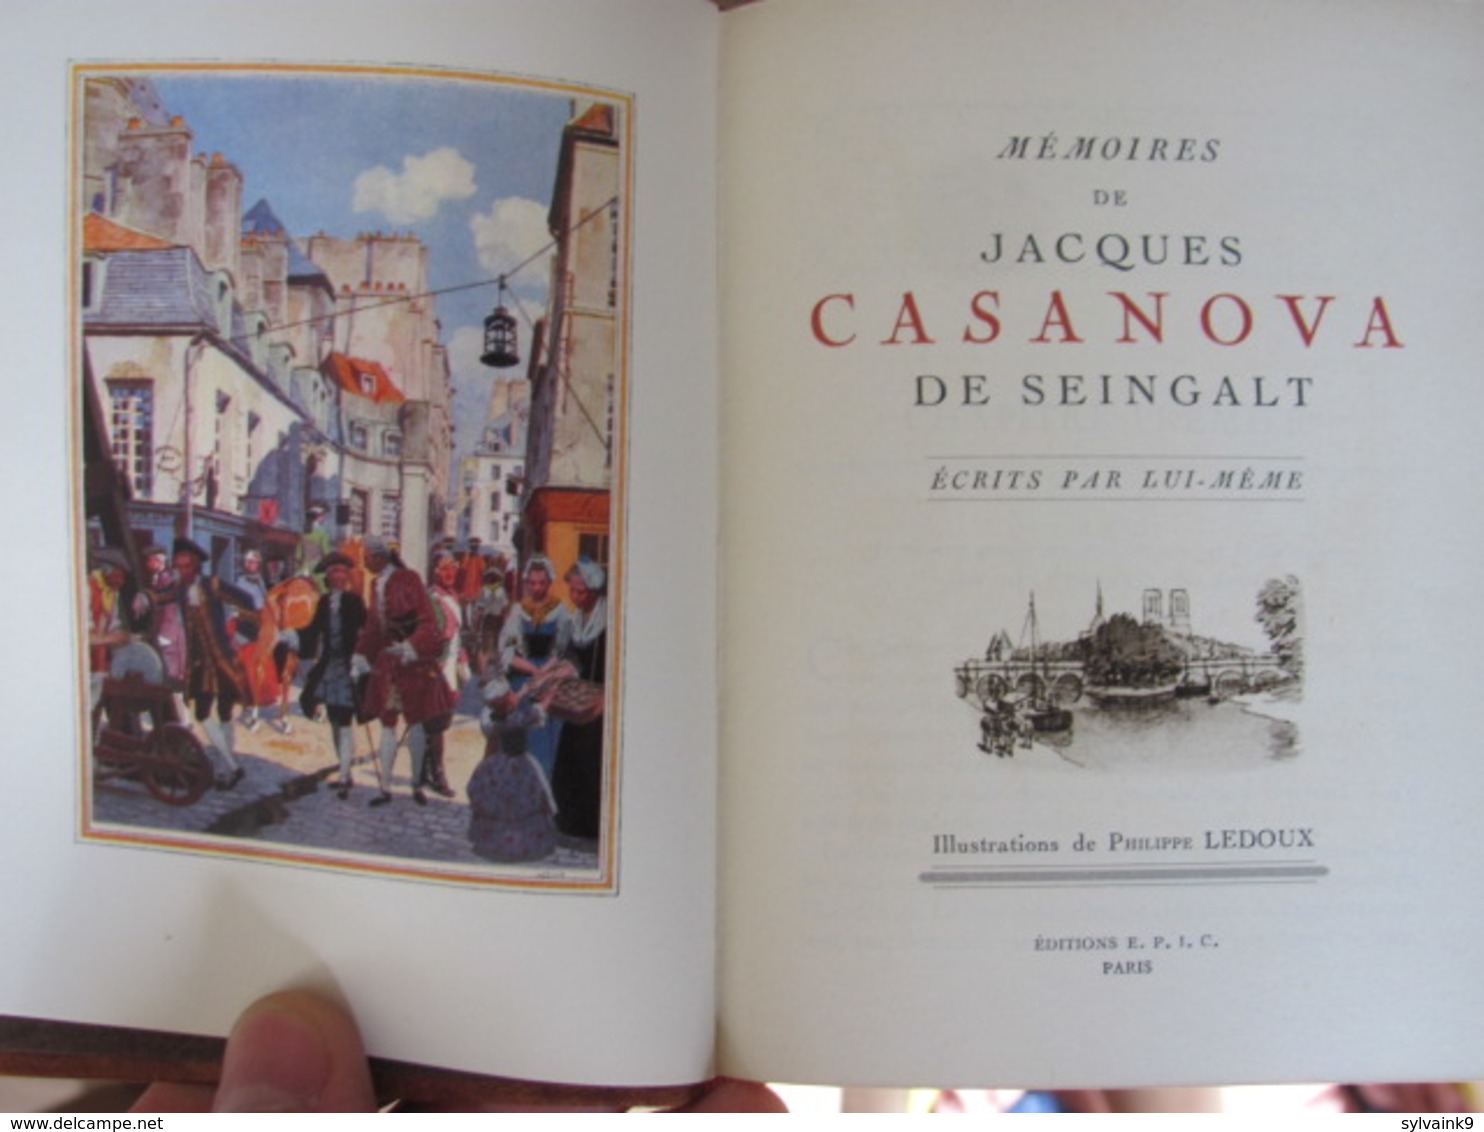 mémoires de jacques casanova de seingalt illustrations de philippe ledoux ed. epic